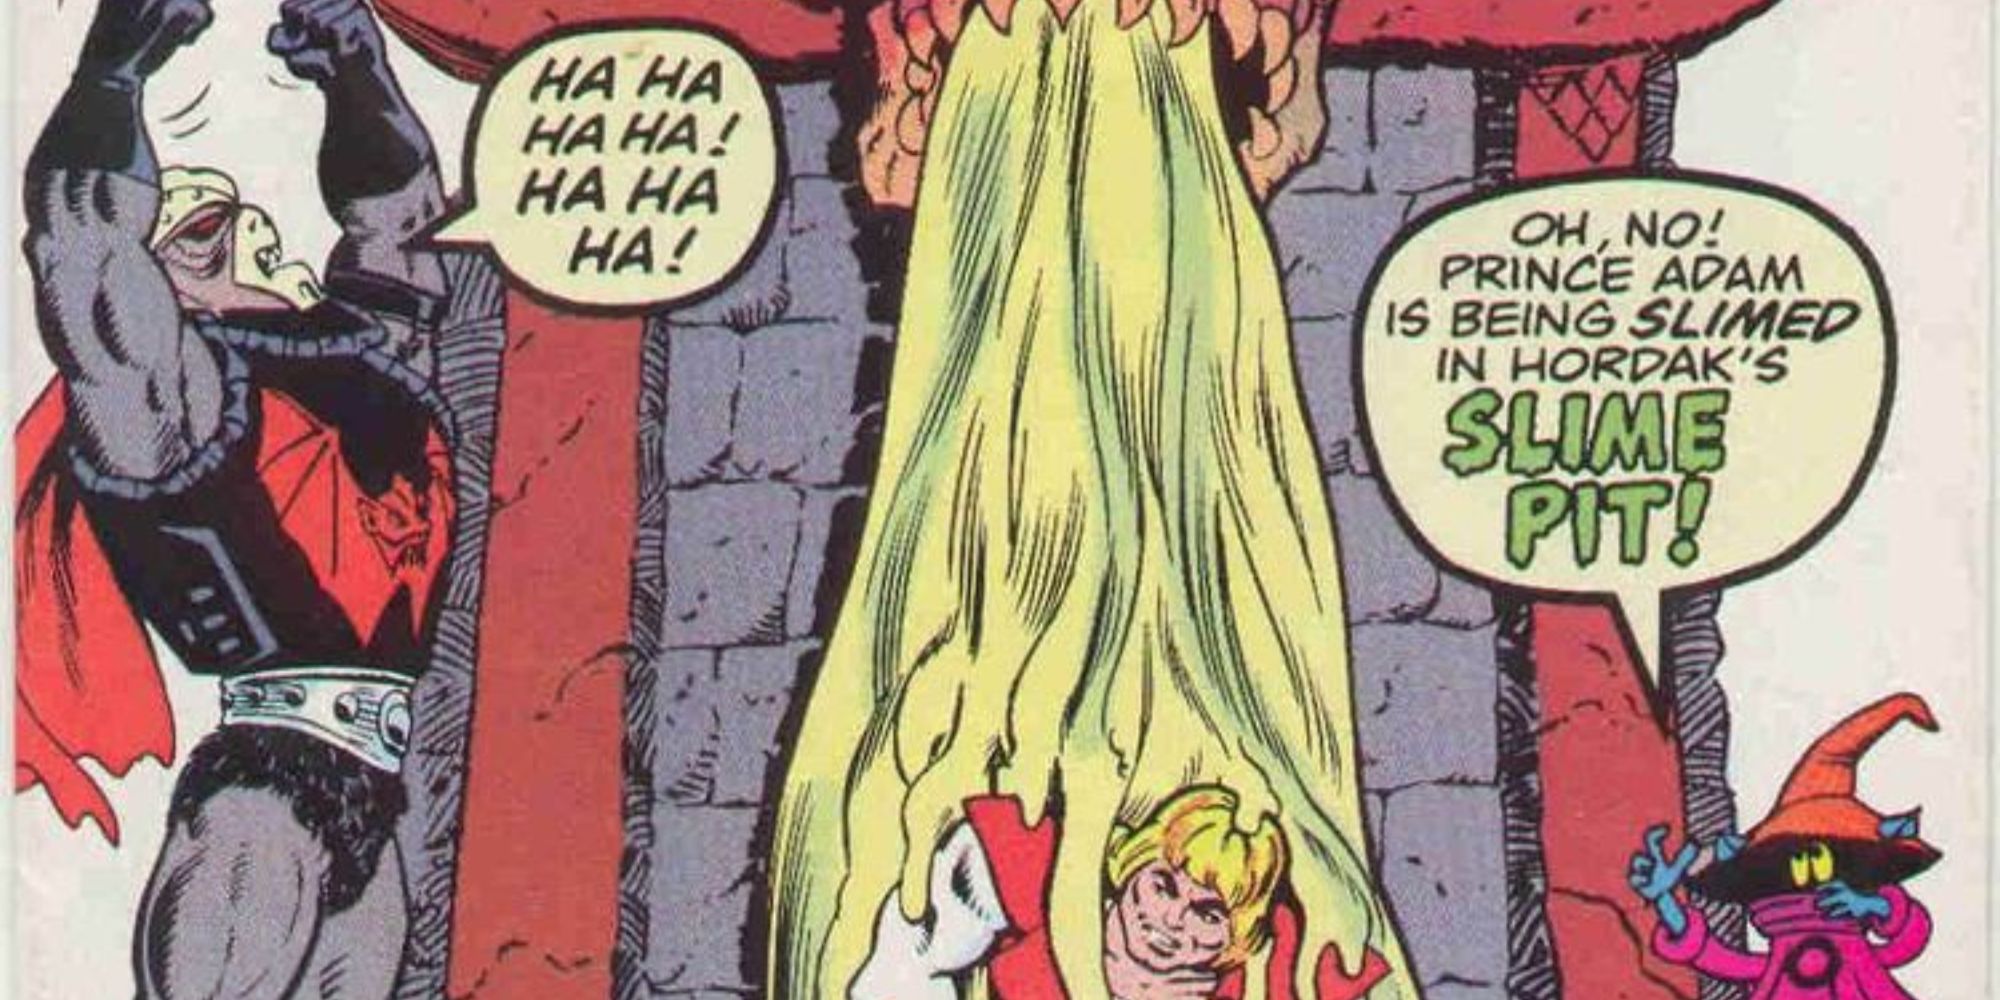 Hordak prende o príncipe Adam em lodo em Masters of the Universe #3.